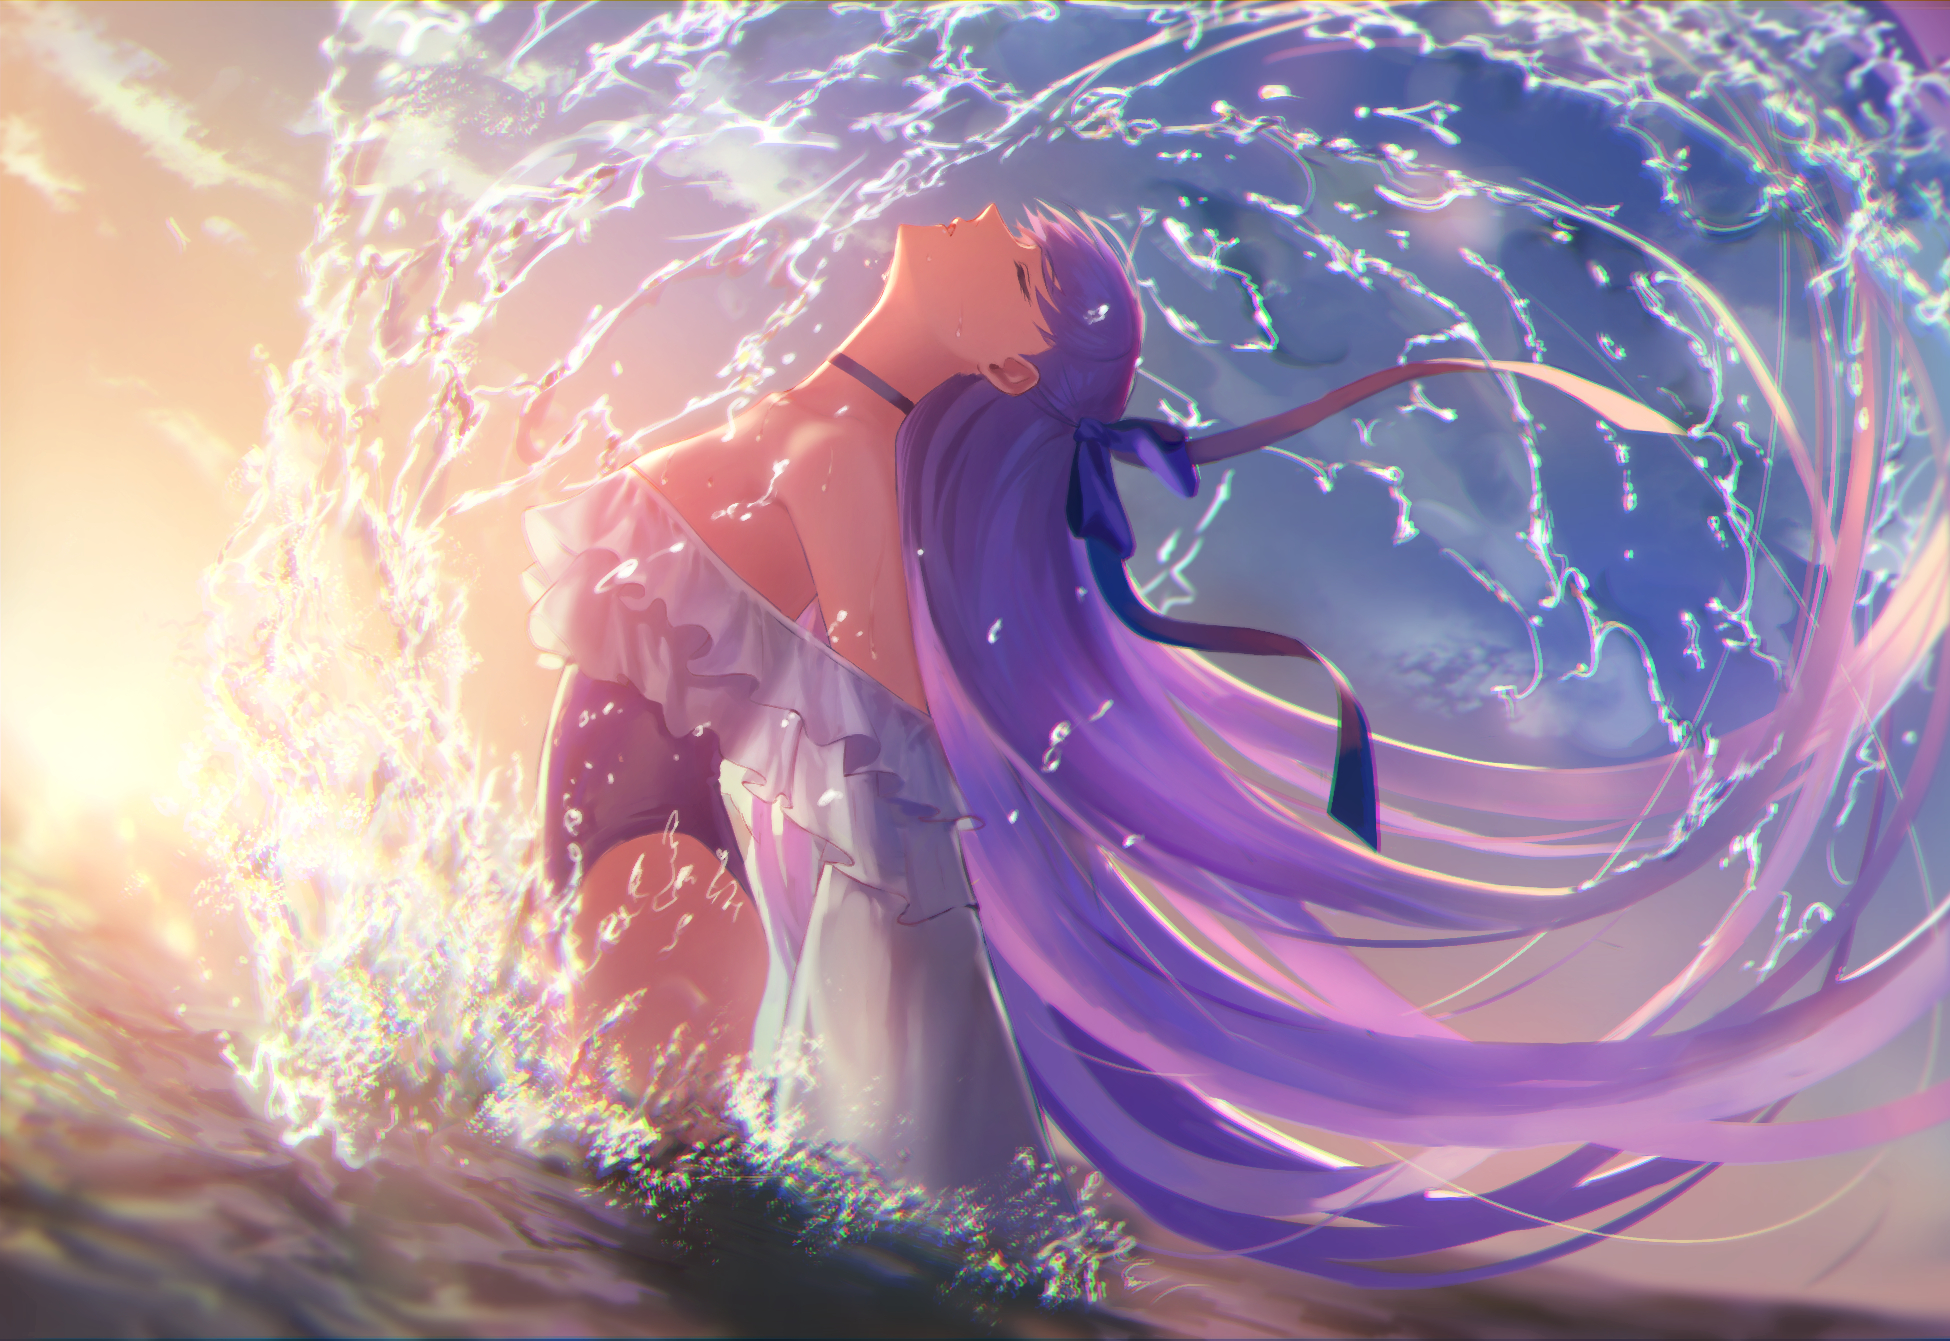 Fate Grand Order Meltlilith Purple Hair Long Hair Water Wet FGO Fate Series 1950x1341